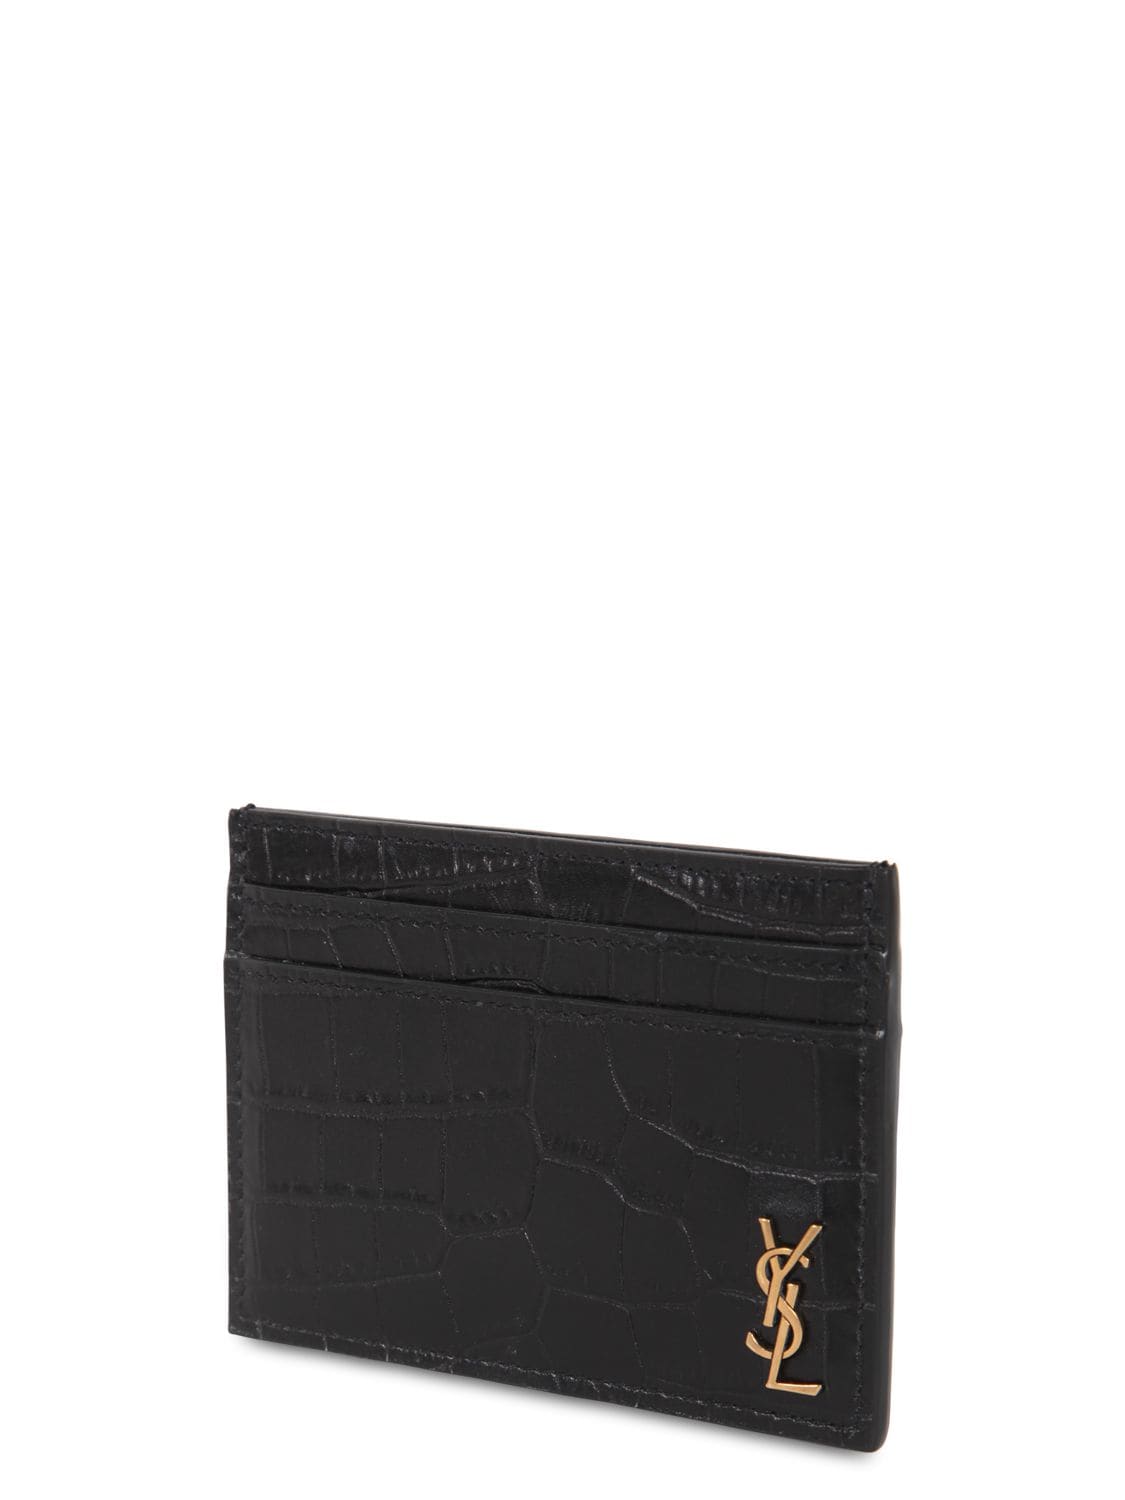 Saint Laurent Ysl Monogram Croc Embossed Leather Card Case In Nero 